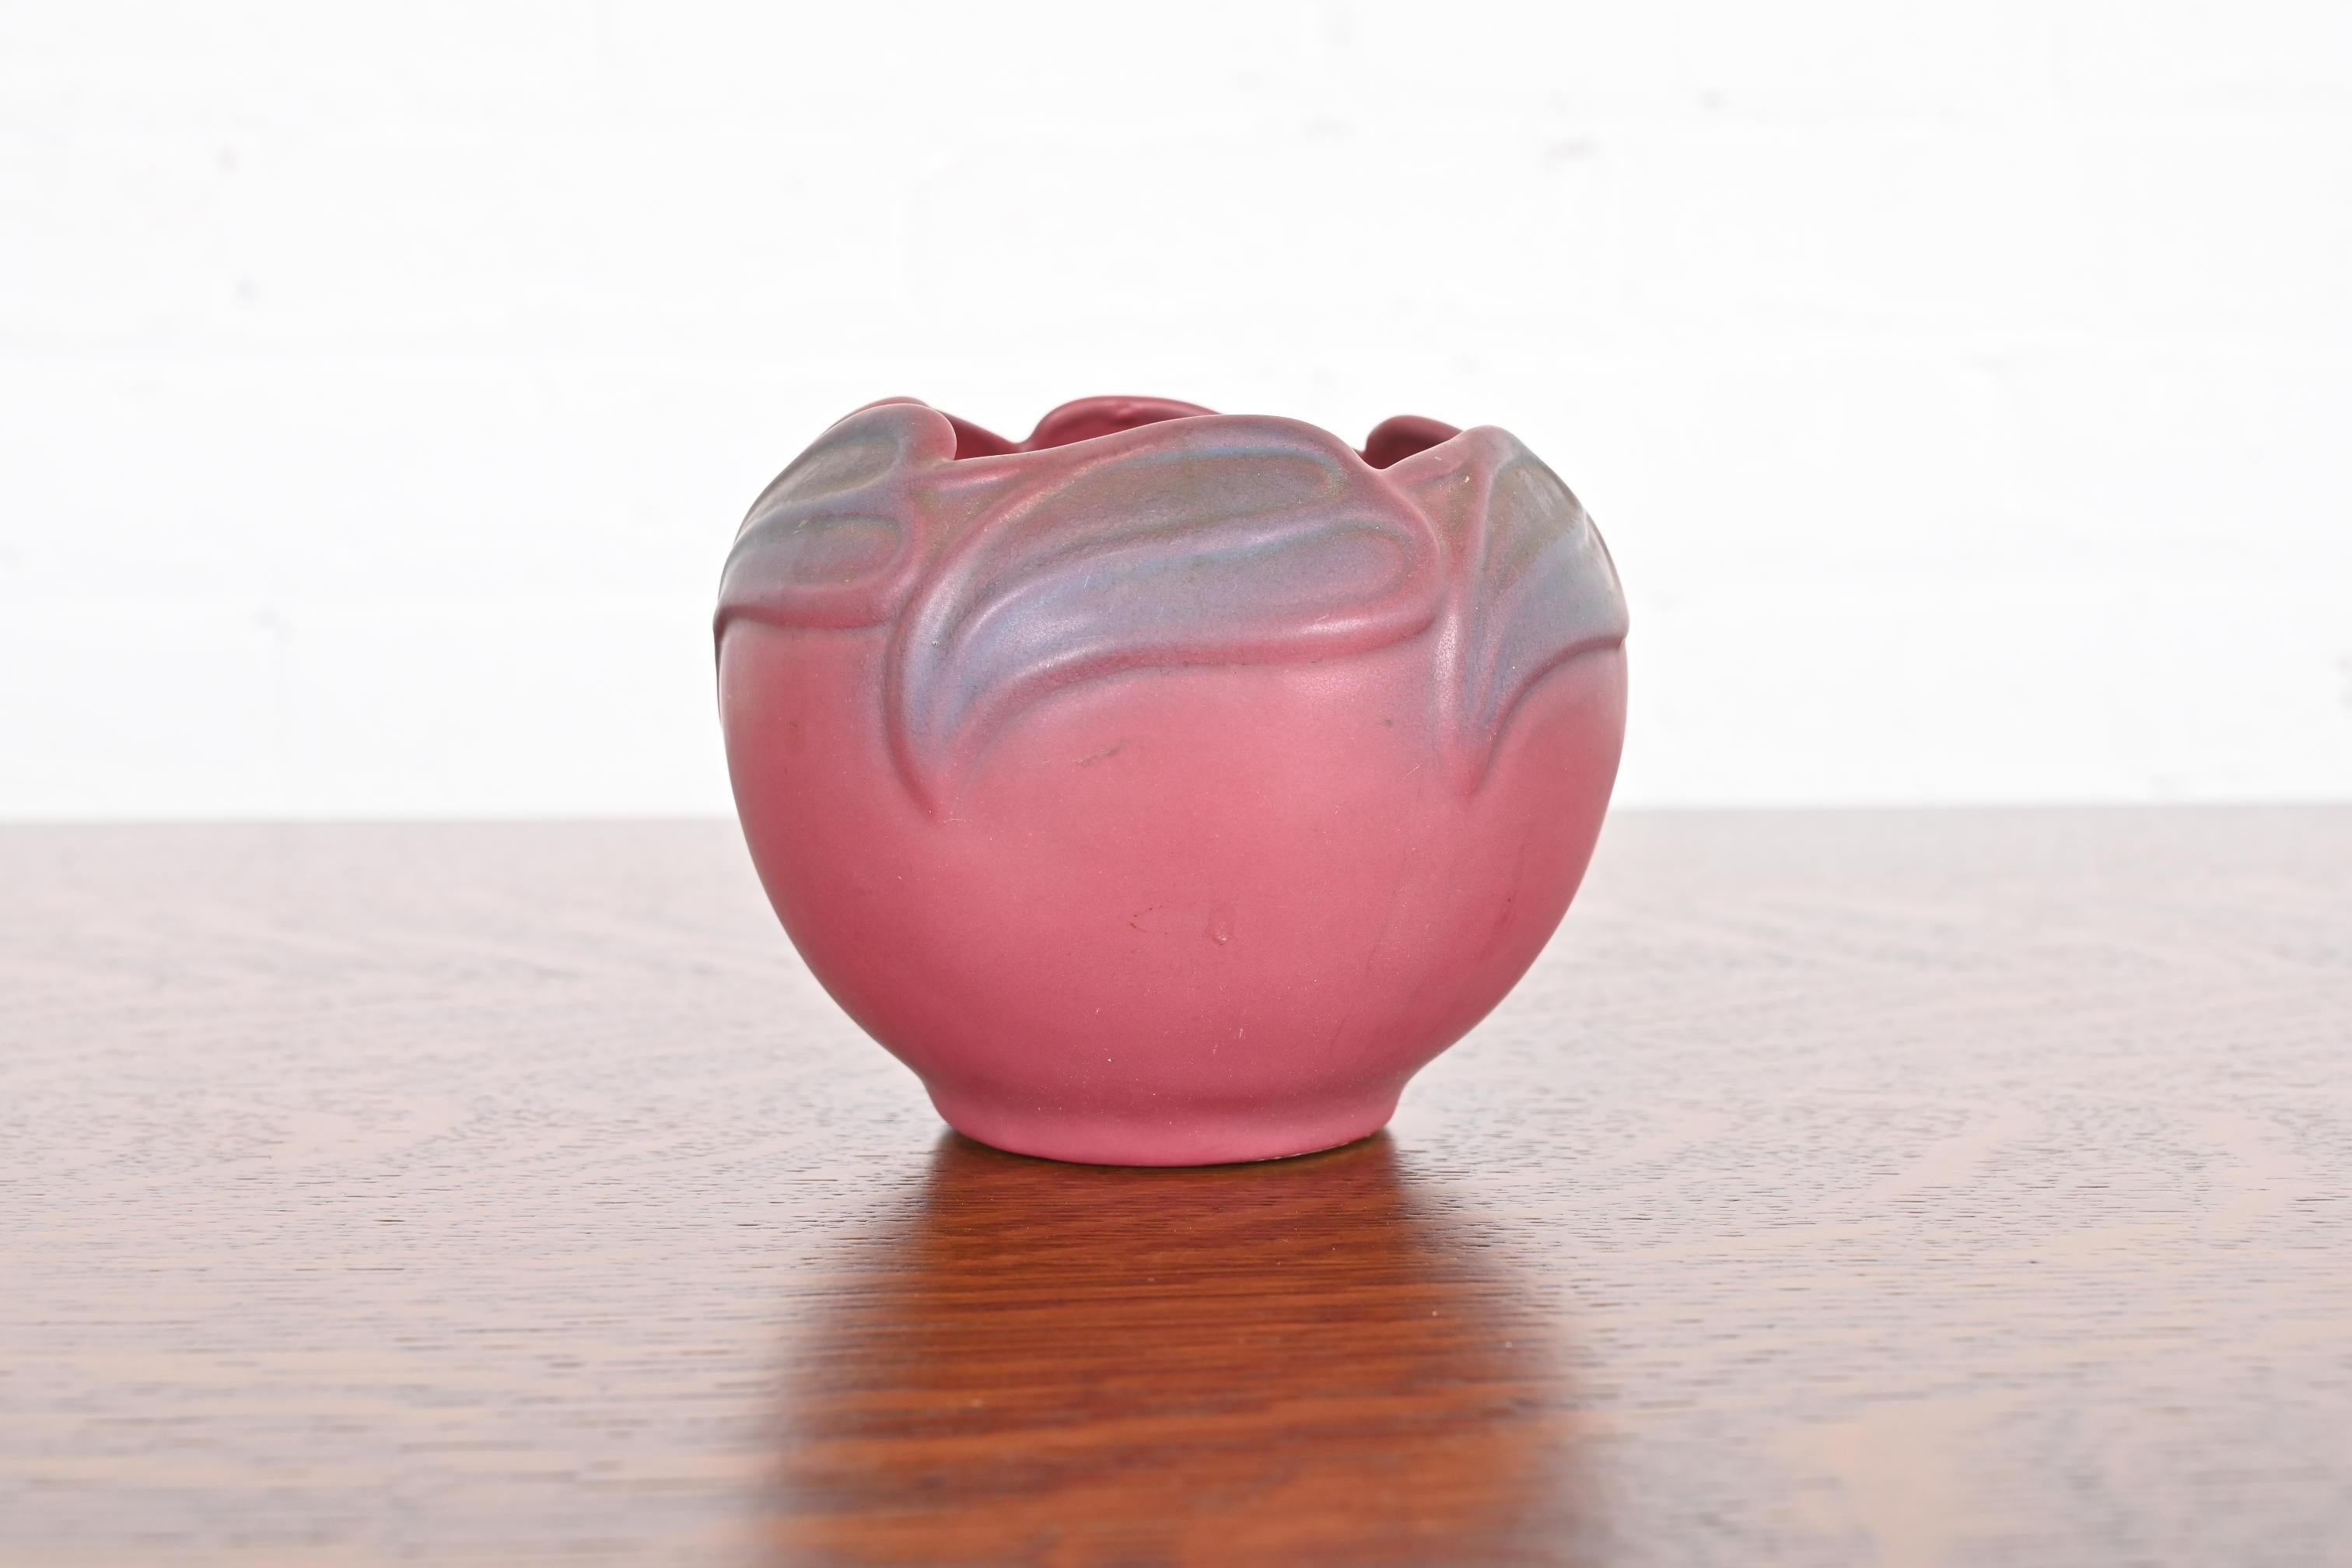 Magnifique vase en céramique émaillée rose et lavande à motif floral de la période Arts & Crafts.

Par Van Briggle (signé au verso)

États-Unis d'Amérique, début du 20e siècle

Dimensions : 5,13 